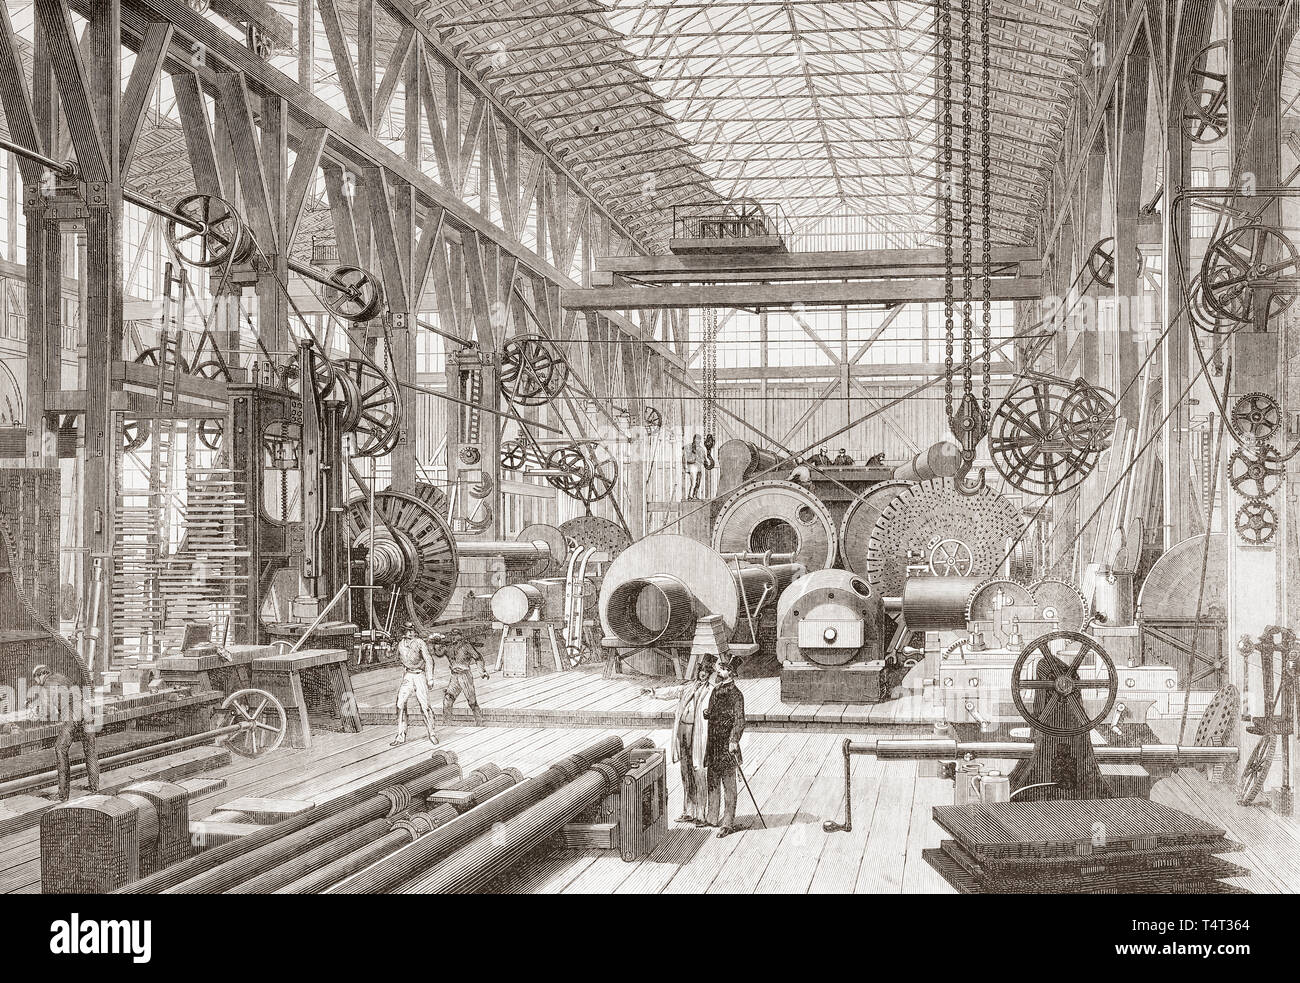 Penn motore marino fabbrica, Greenwich, Londra, Inghilterra del XIX secolo. Il grande negozio di macchina e turnery. Dal Illustrated London News, pubblicato 1865. Foto Stock